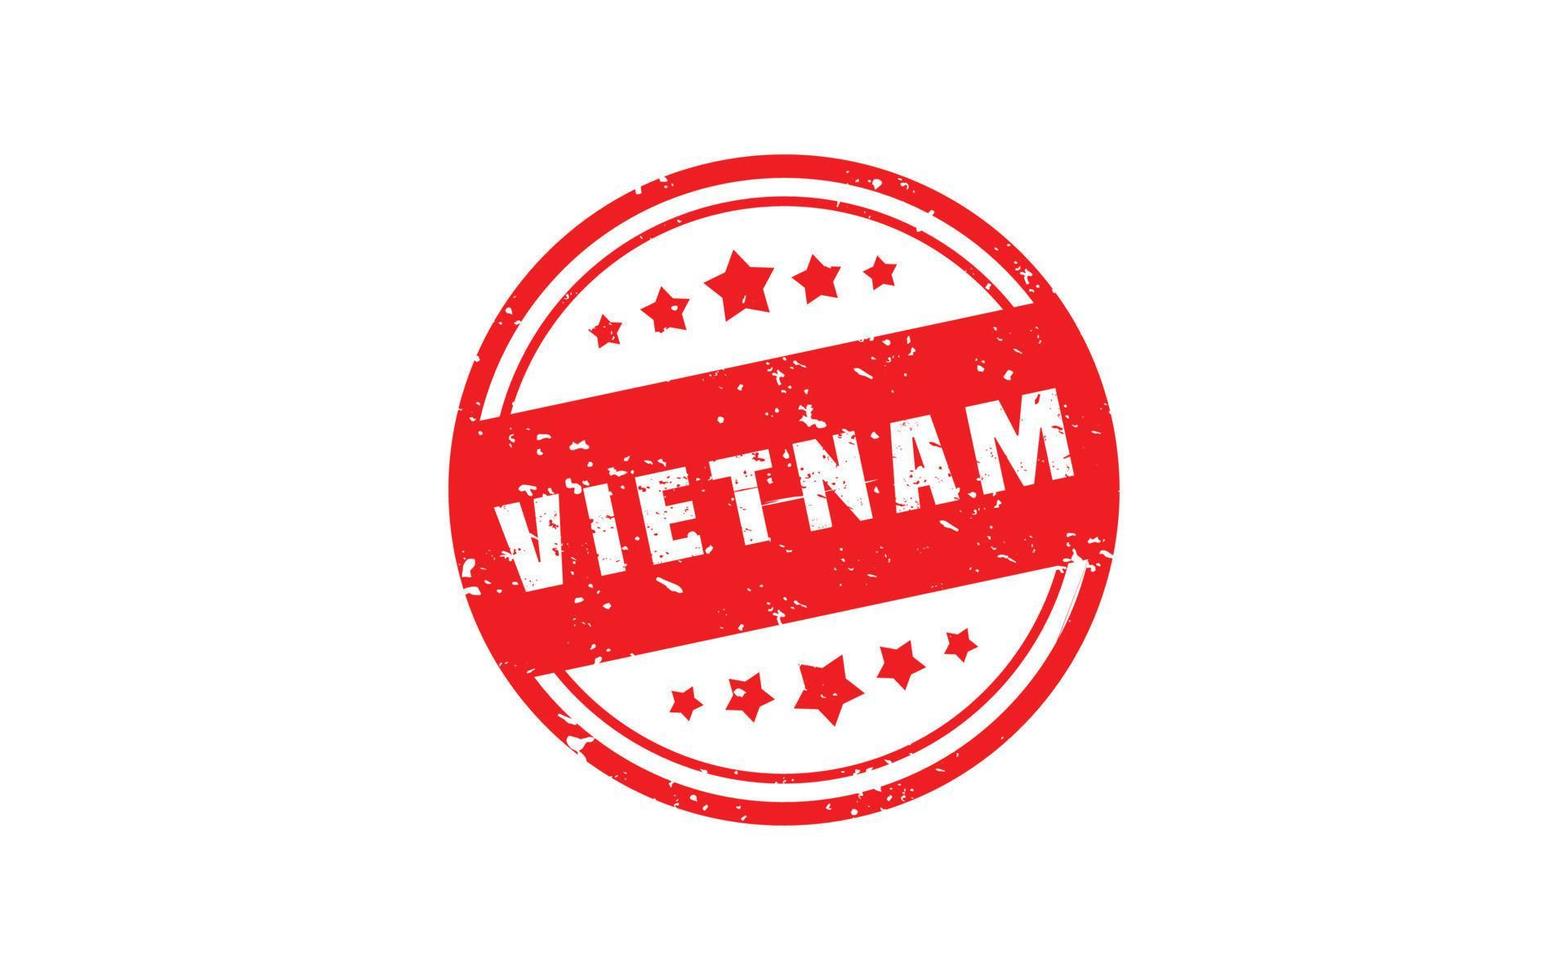 Vietnam-Stempelgummi mit Grunge-Stil auf weißem Hintergrund vektor